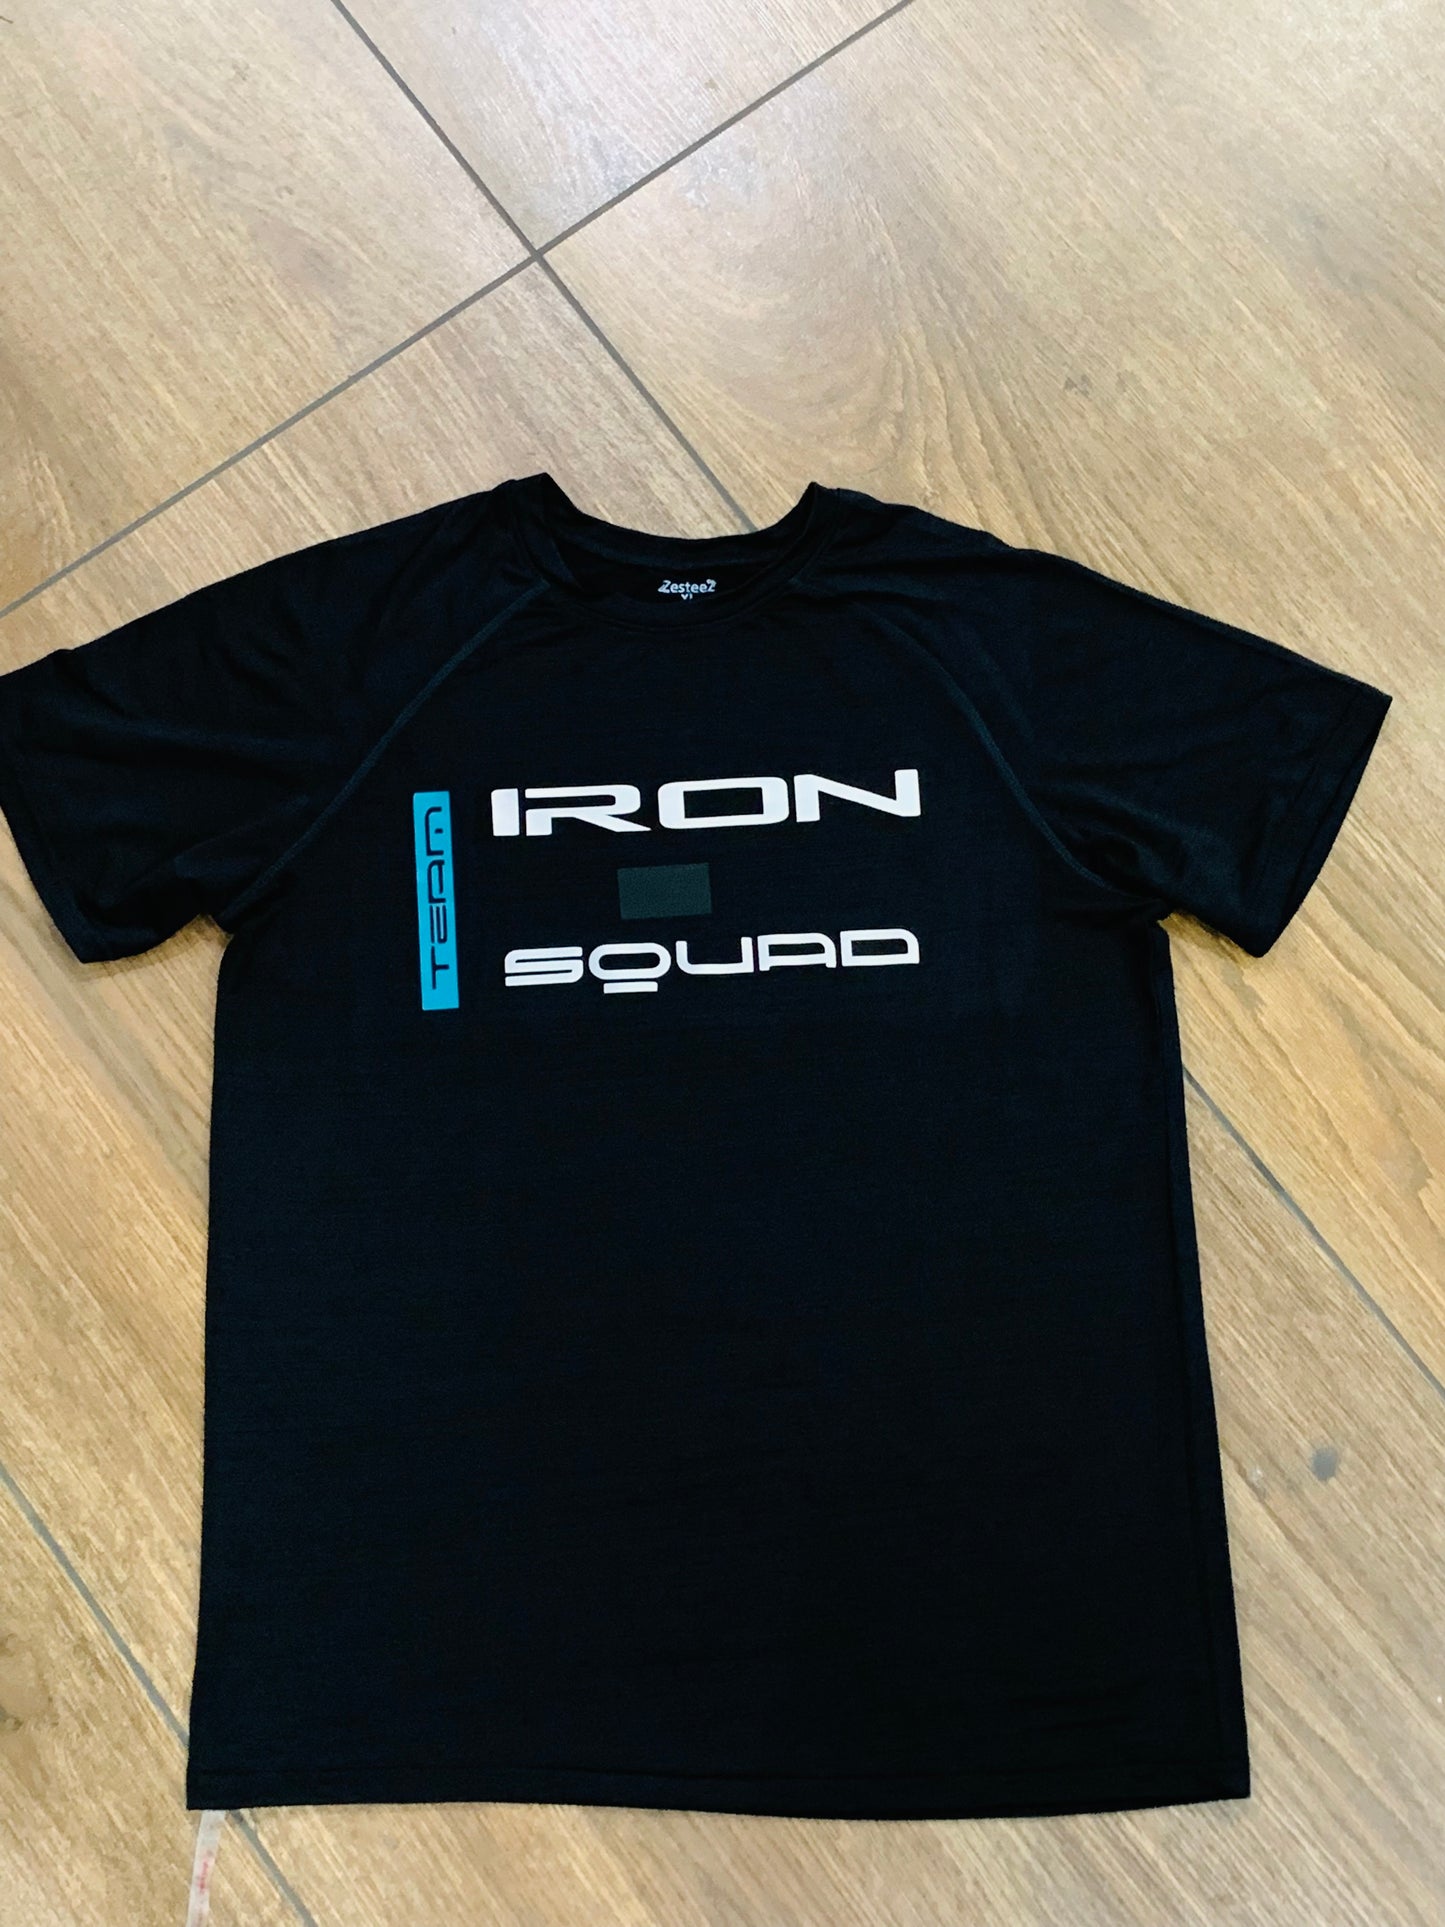 IRON SQUAD ACTIVE CAMOFLAUGE  BLACK short sleeve tshirt